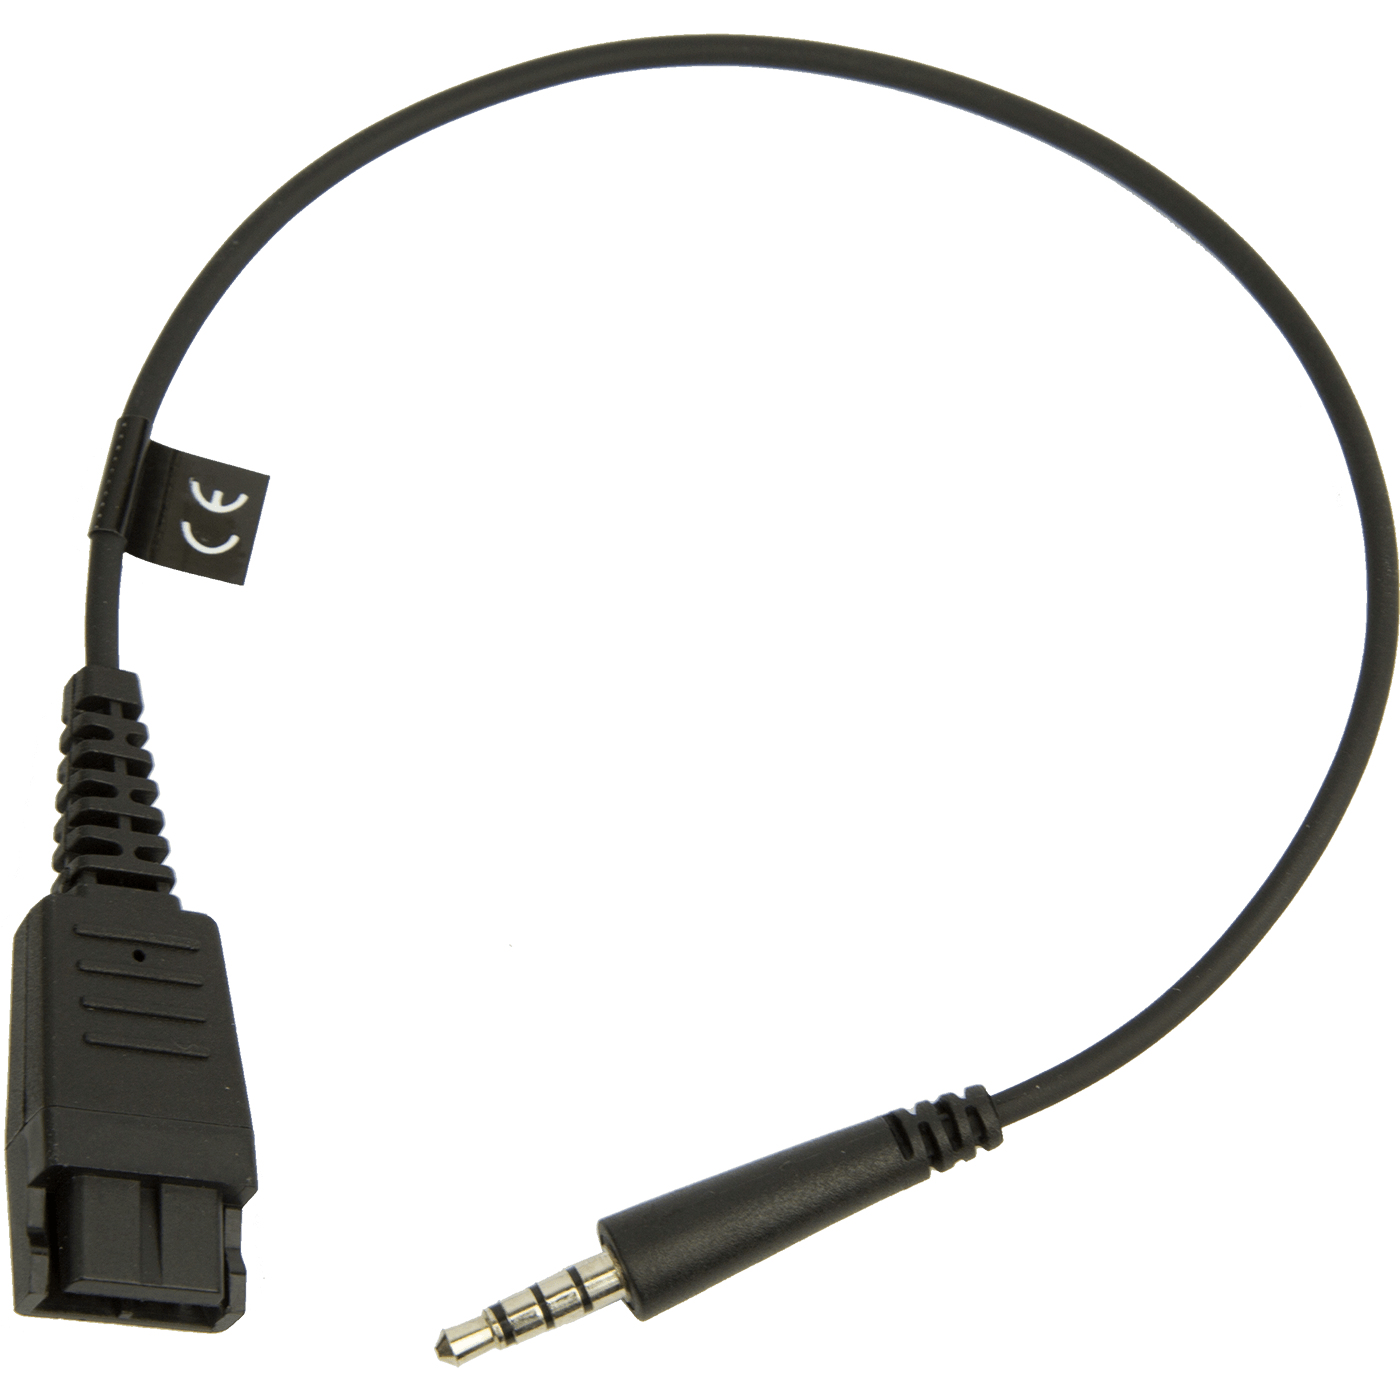 Photos - Cable (video, audio, USB) Jabra 8800-00-99 cable gender changer QD 3.5 mm Black 